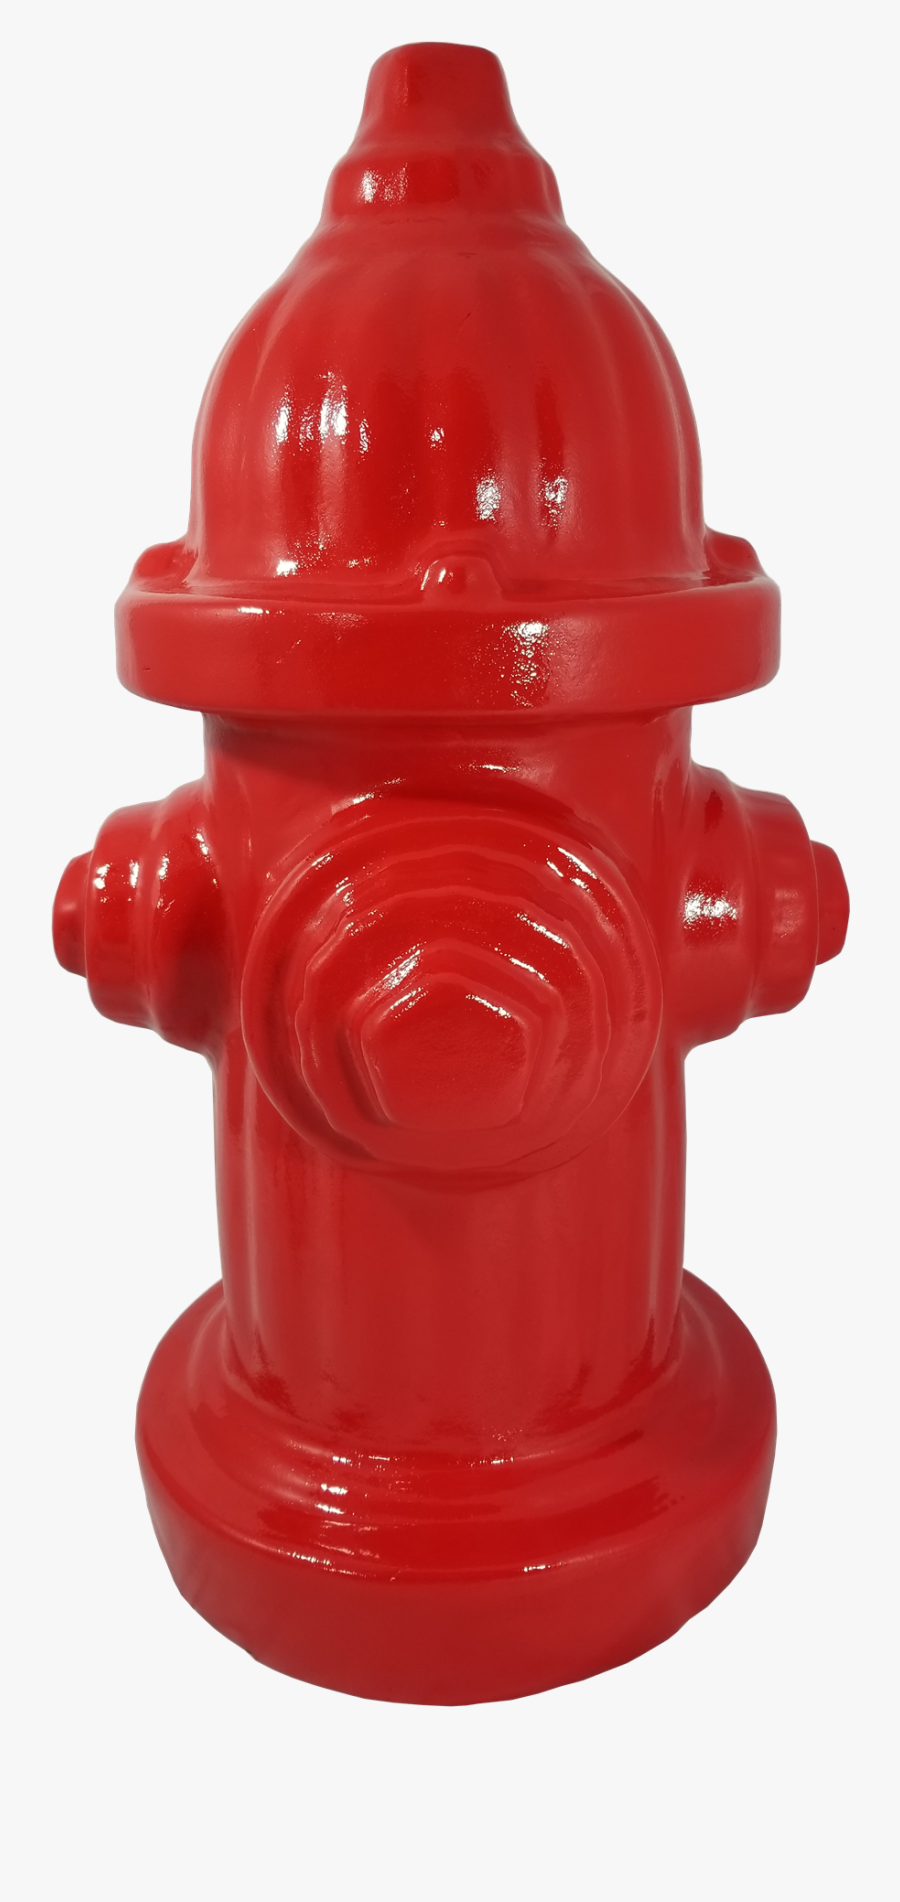 Fire Hydrant Png Hydrant Png - Red Fire Hydrant Png, Transparent Clipart